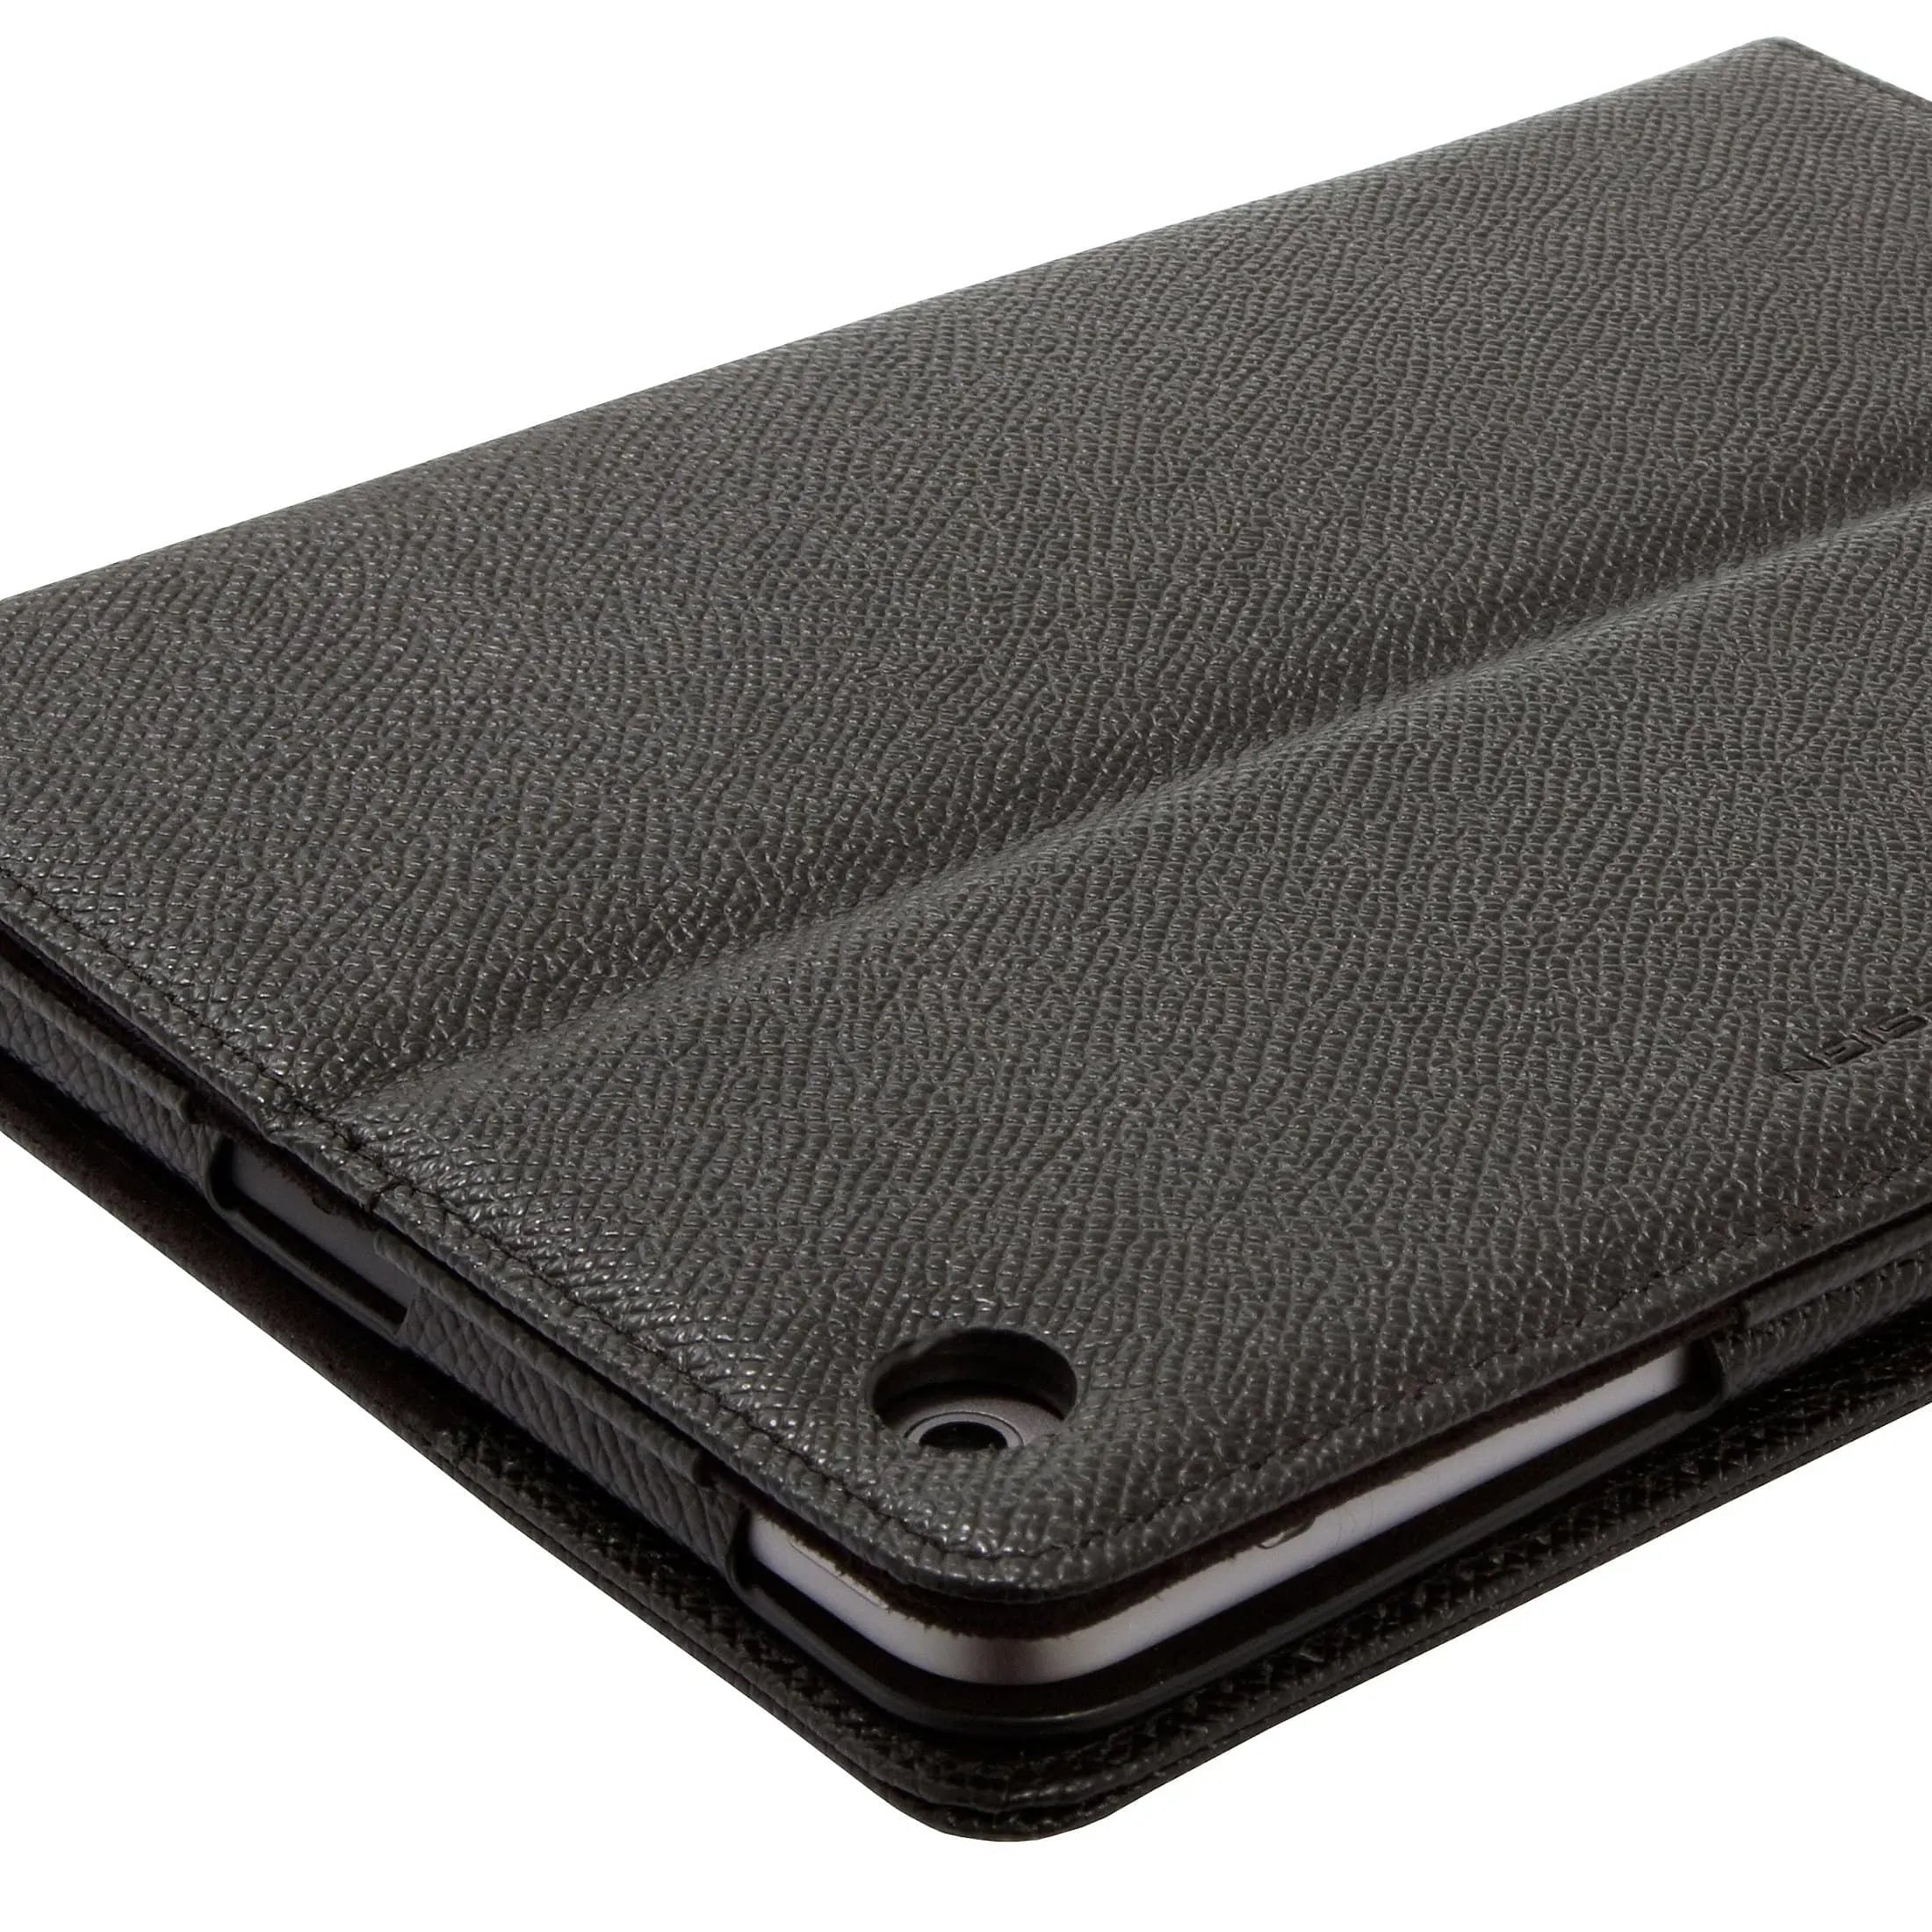 Porsche Design French Classic 3.0 iPad mini Case 1 21 cm - black